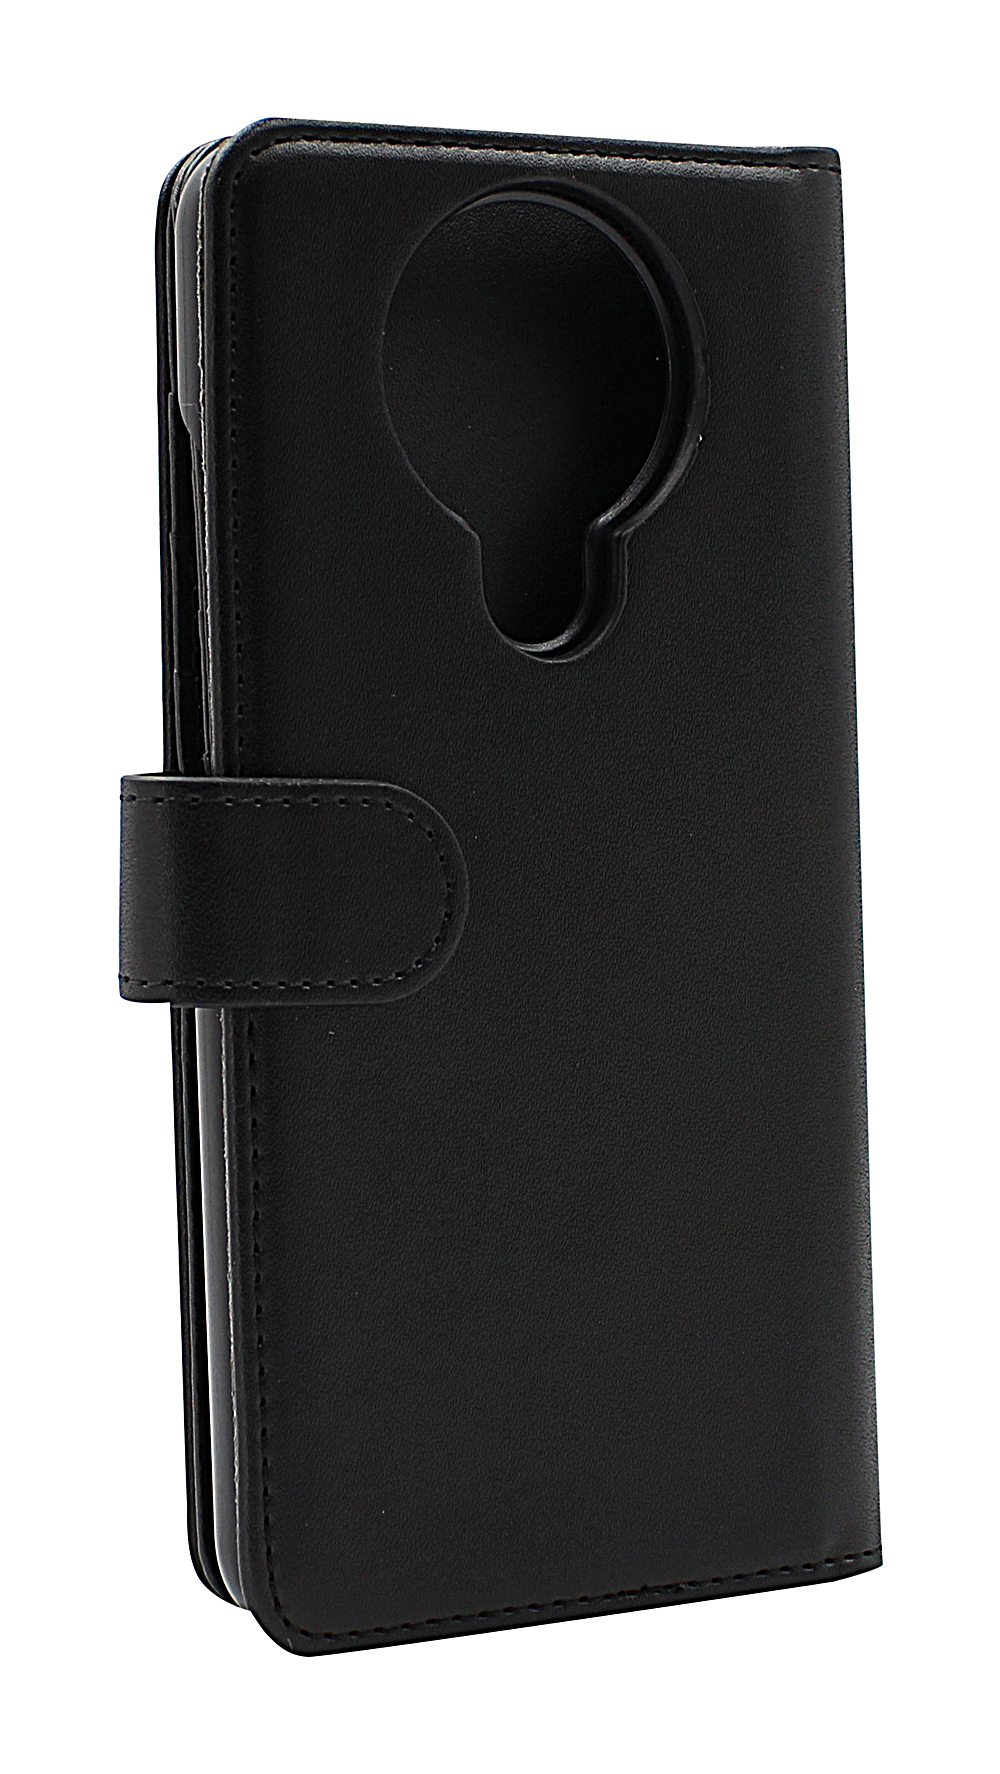 Skimblocker XL Wallet Nokia 3.4